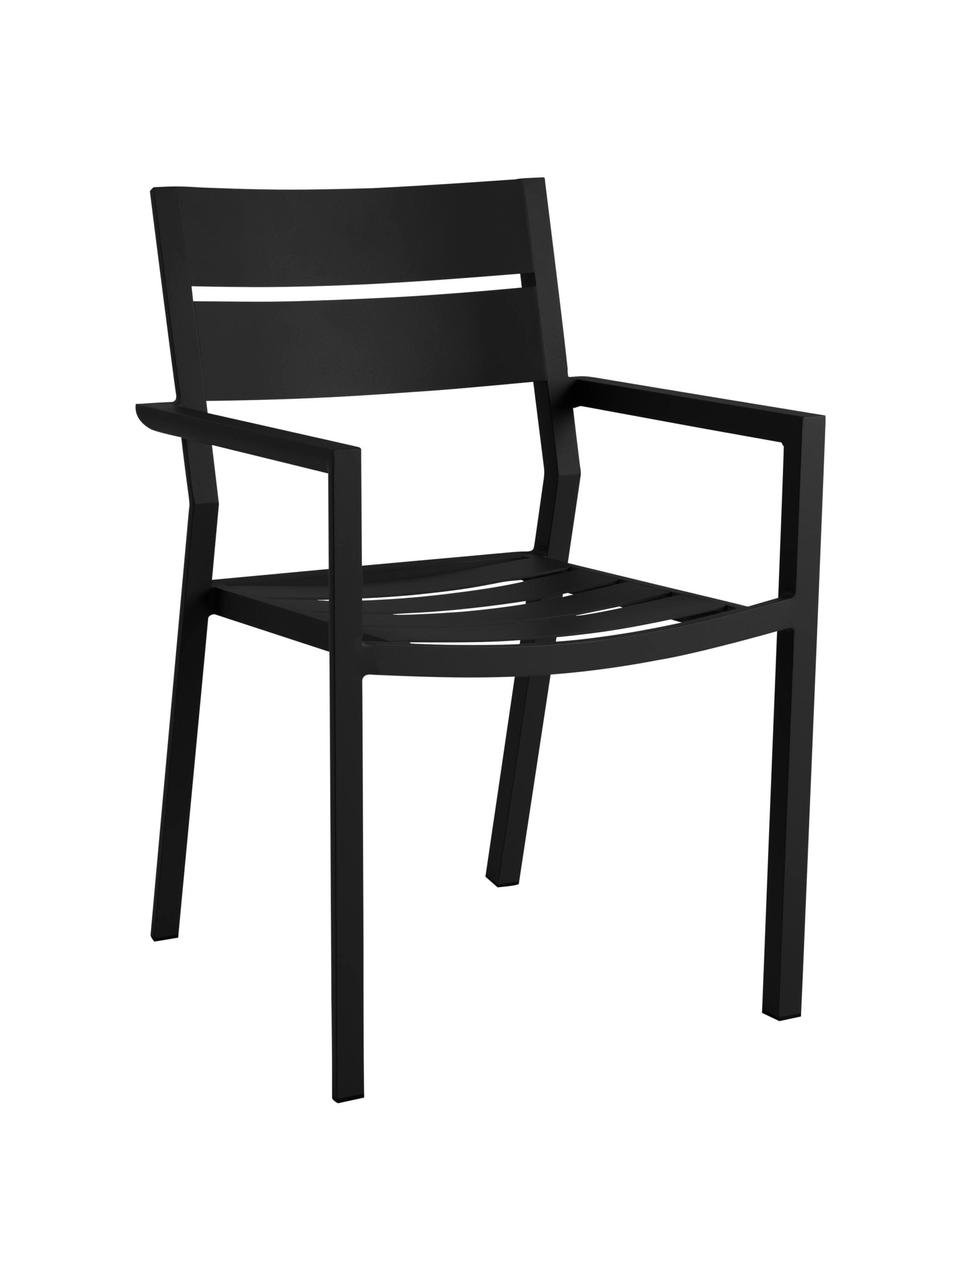 Krzesło ogrodowe Delia, Aluminium malowane proszkowo, Czarny, S 55 x G 55 cm